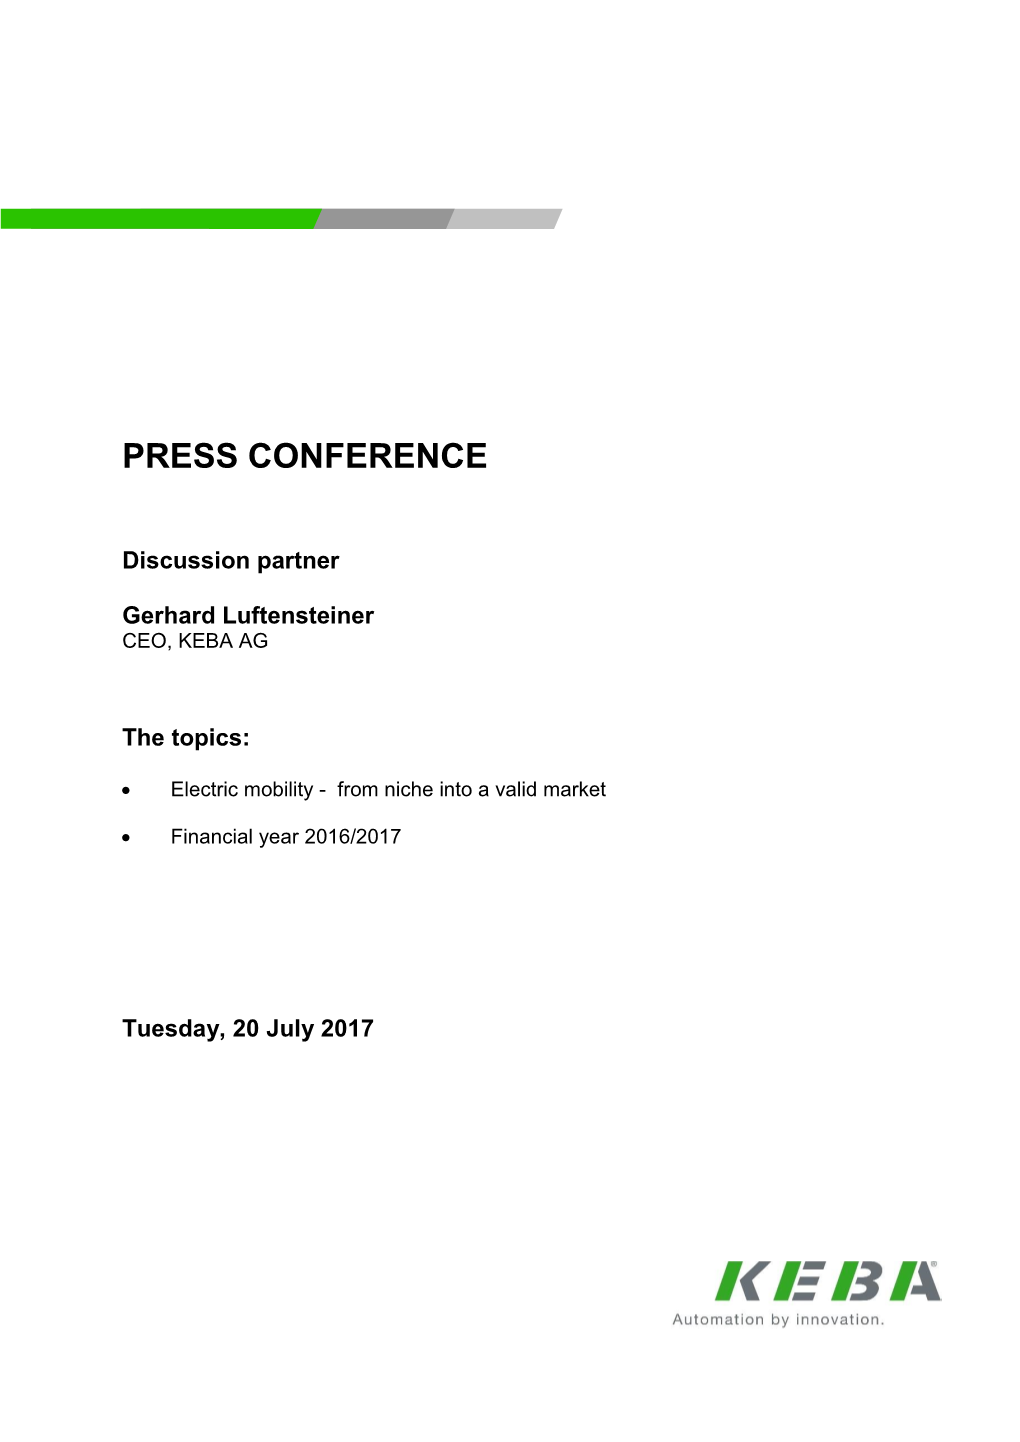 Press Release 21 July 2017